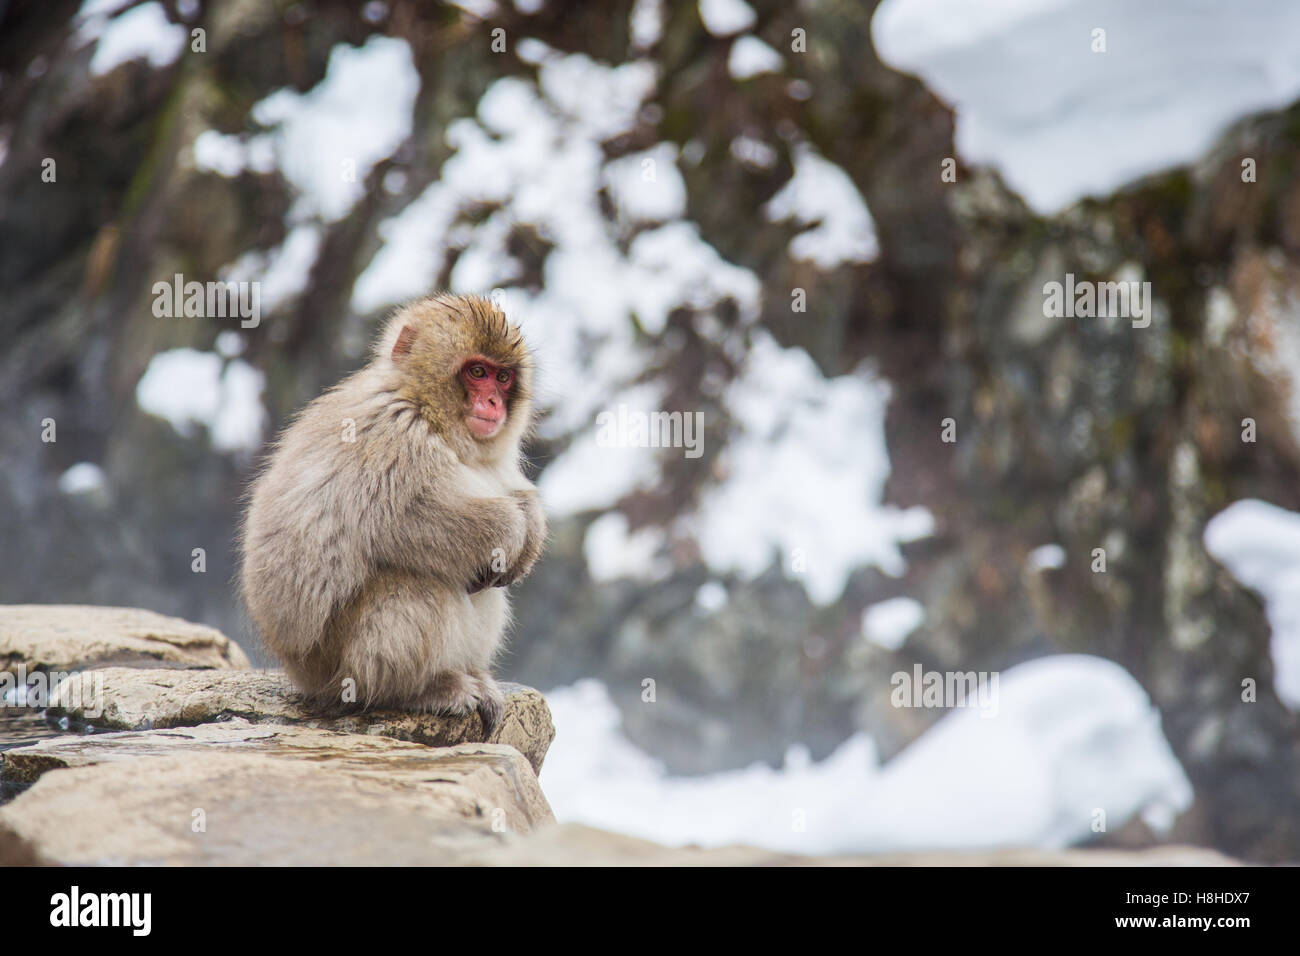 Mono de nieve en un onsen (aguas termales naturales), ubicado en el Parque Jigokudani, Yudanaka. Nagano, Japón. Foto de stock